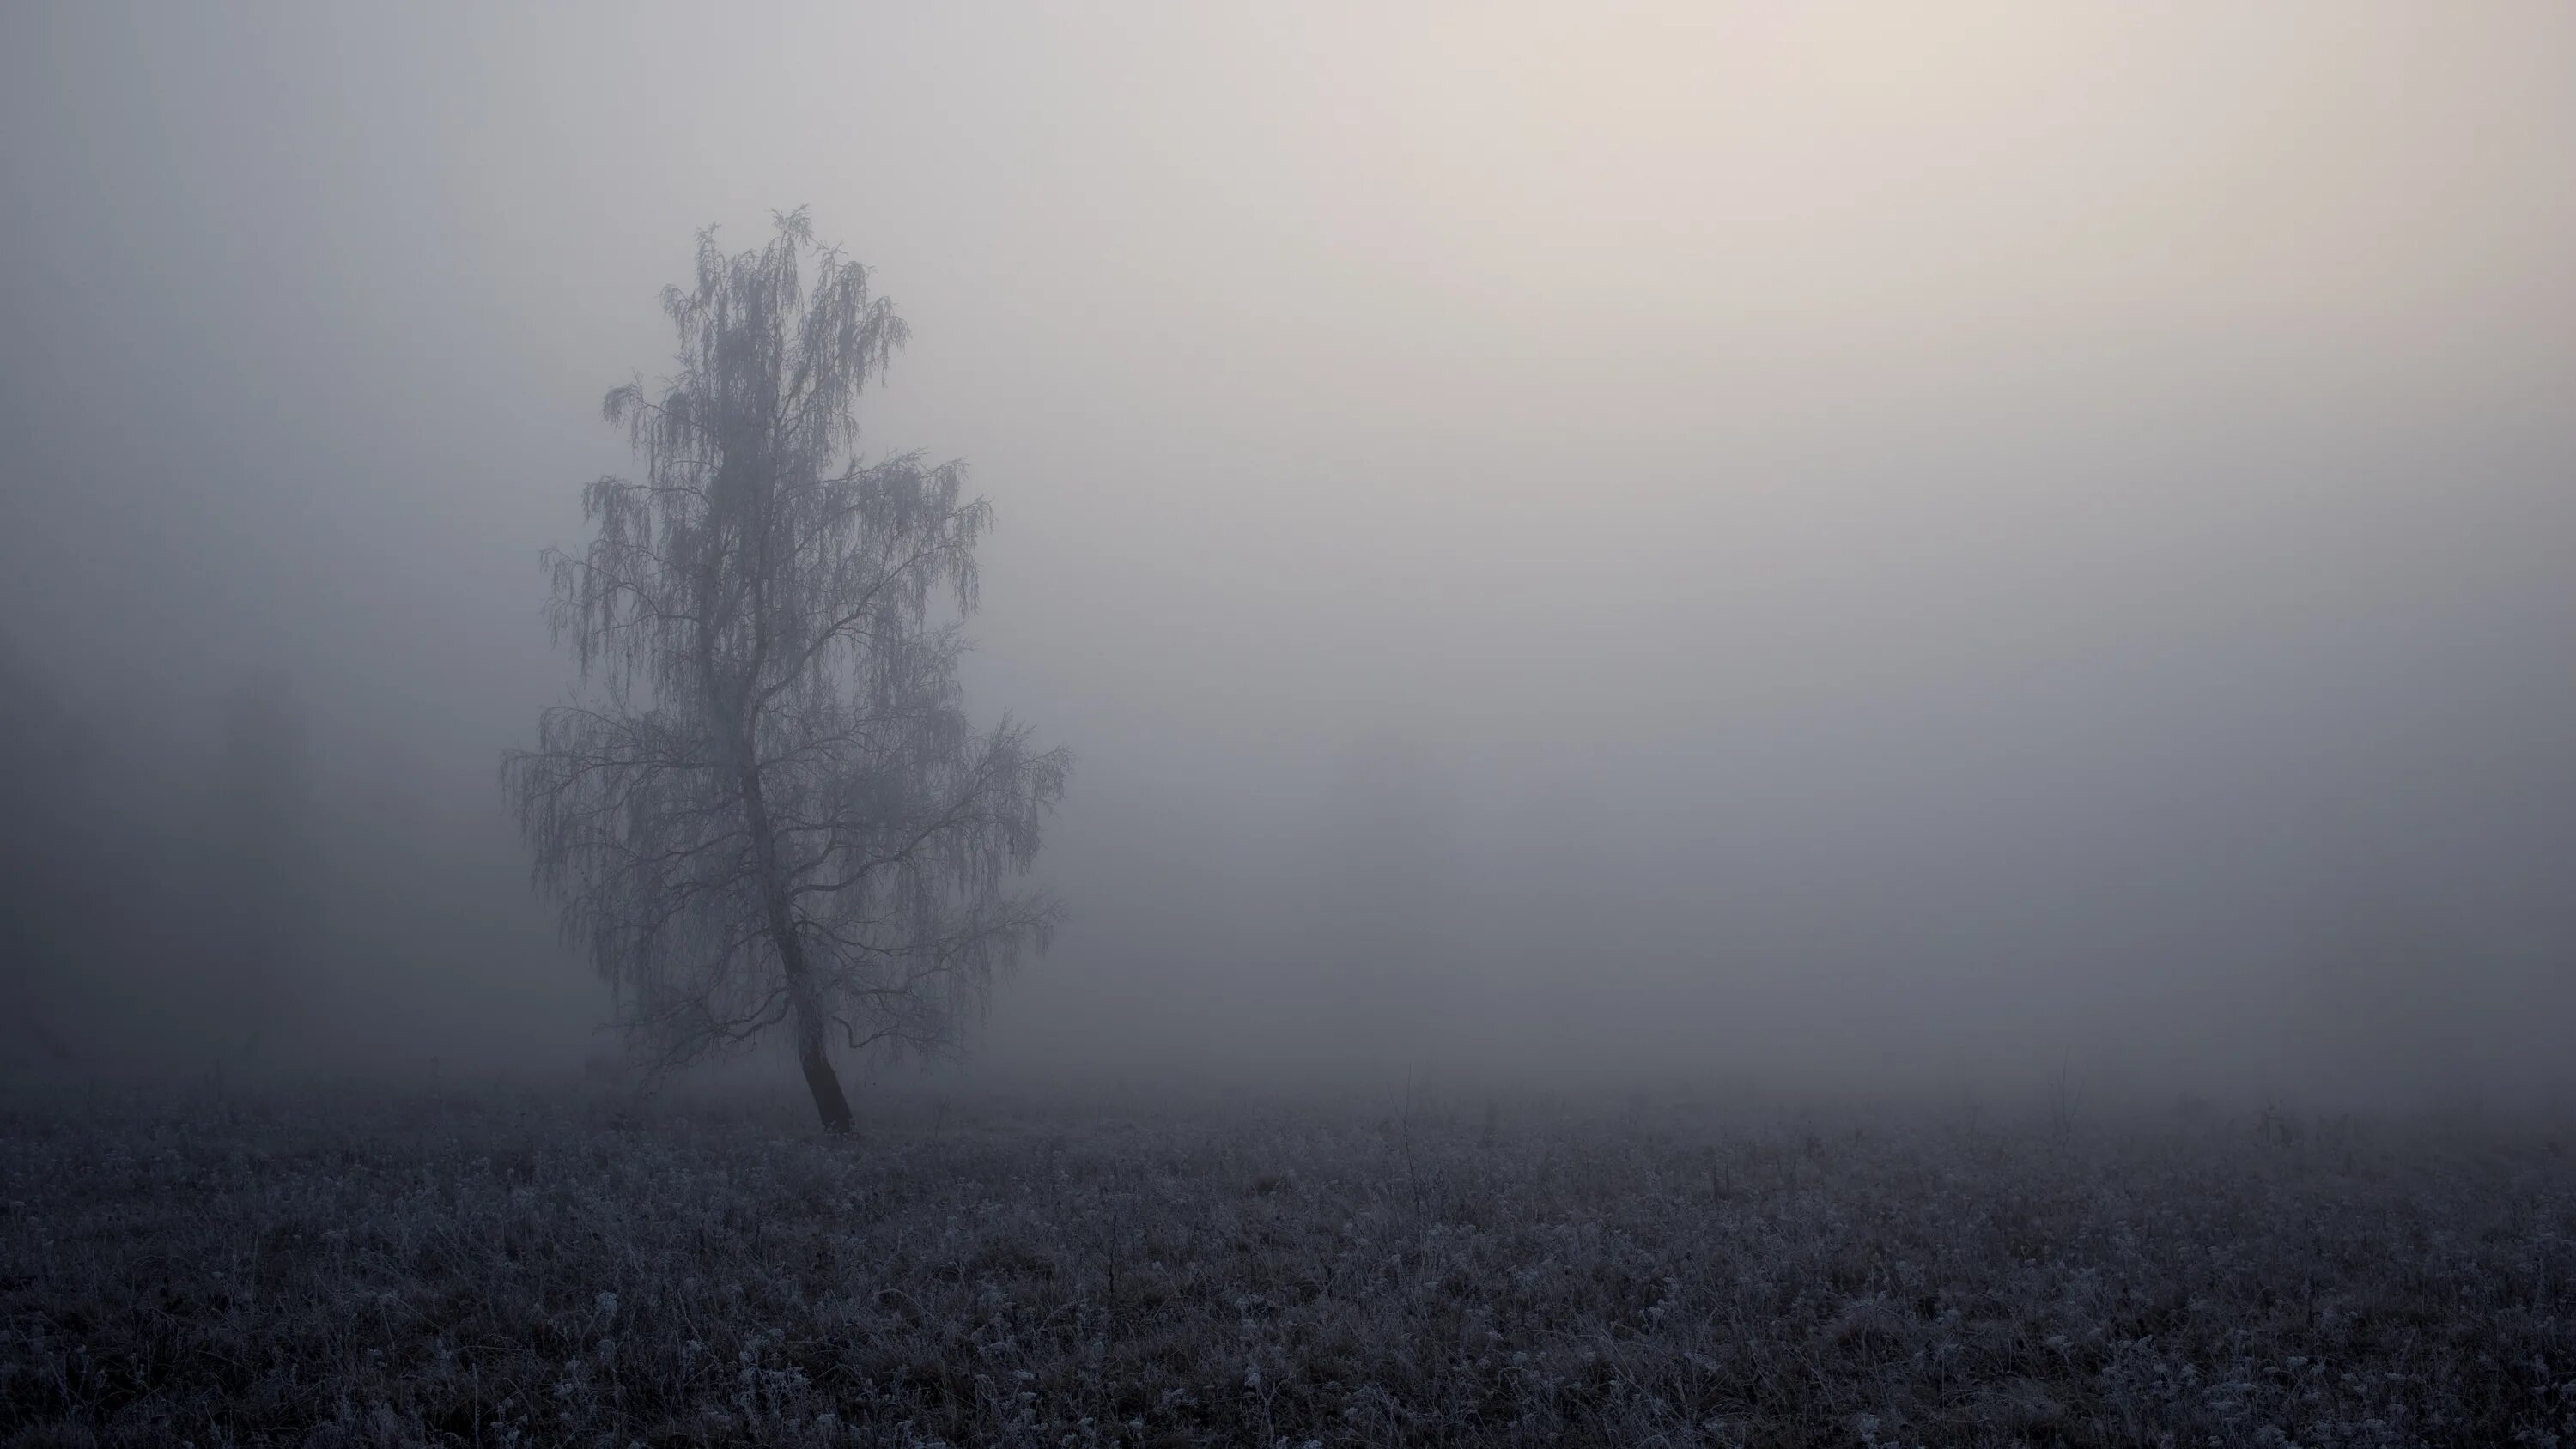 Вдруг навалился густой туман как будто стеной. Мрачный пейзаж. Лес в тумане. Туманный пейзаж. Серый туман.